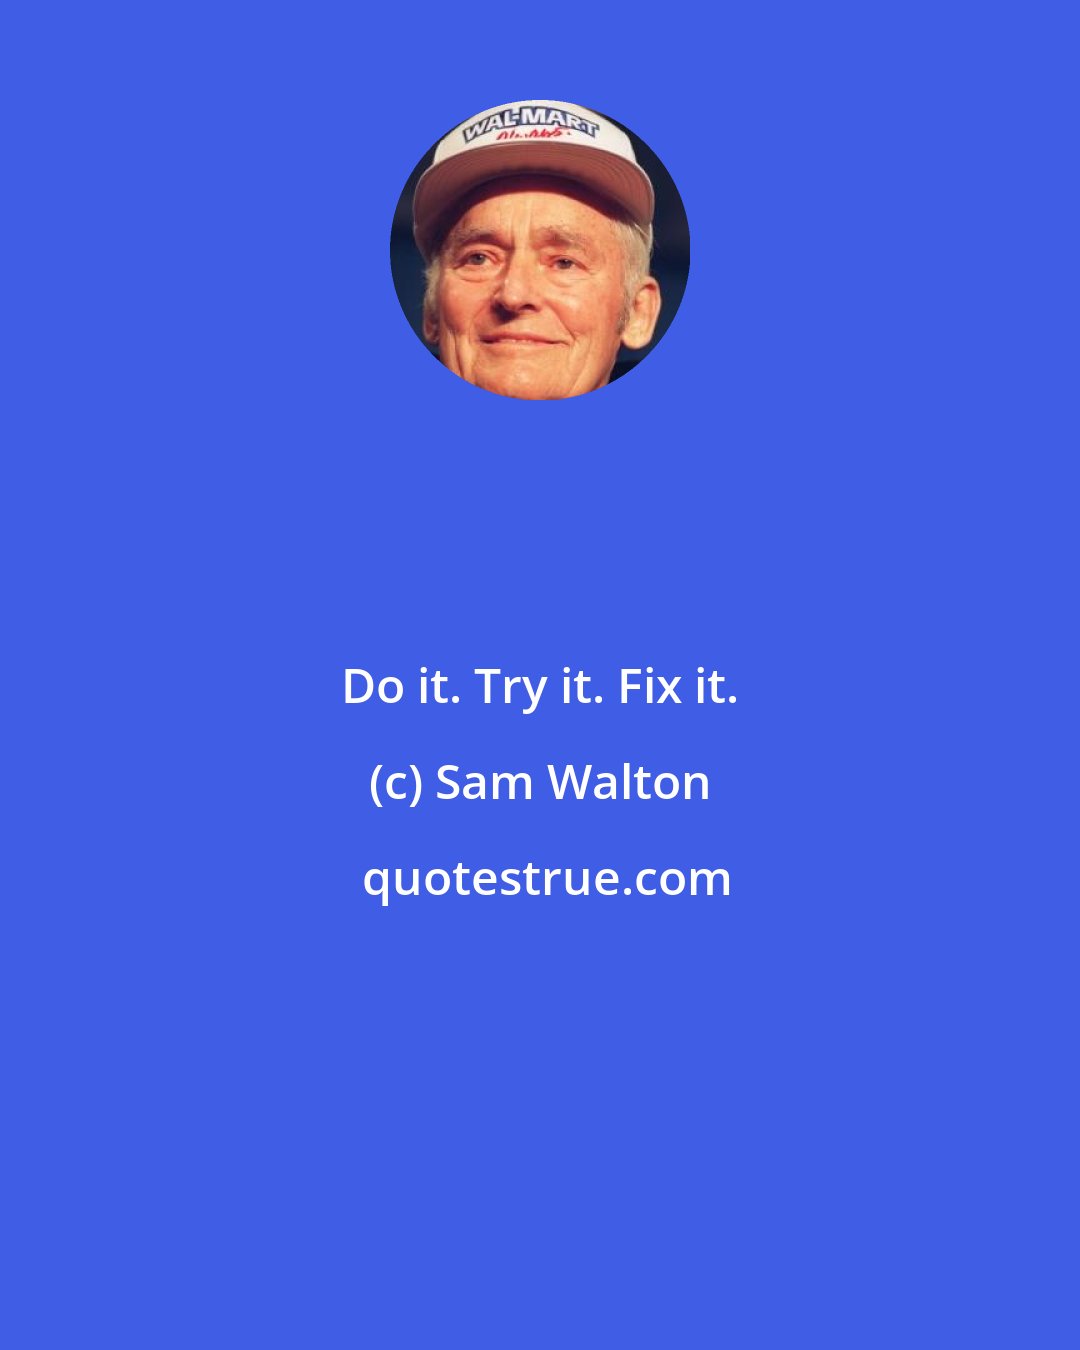 Sam Walton: Do it. Try it. Fix it.